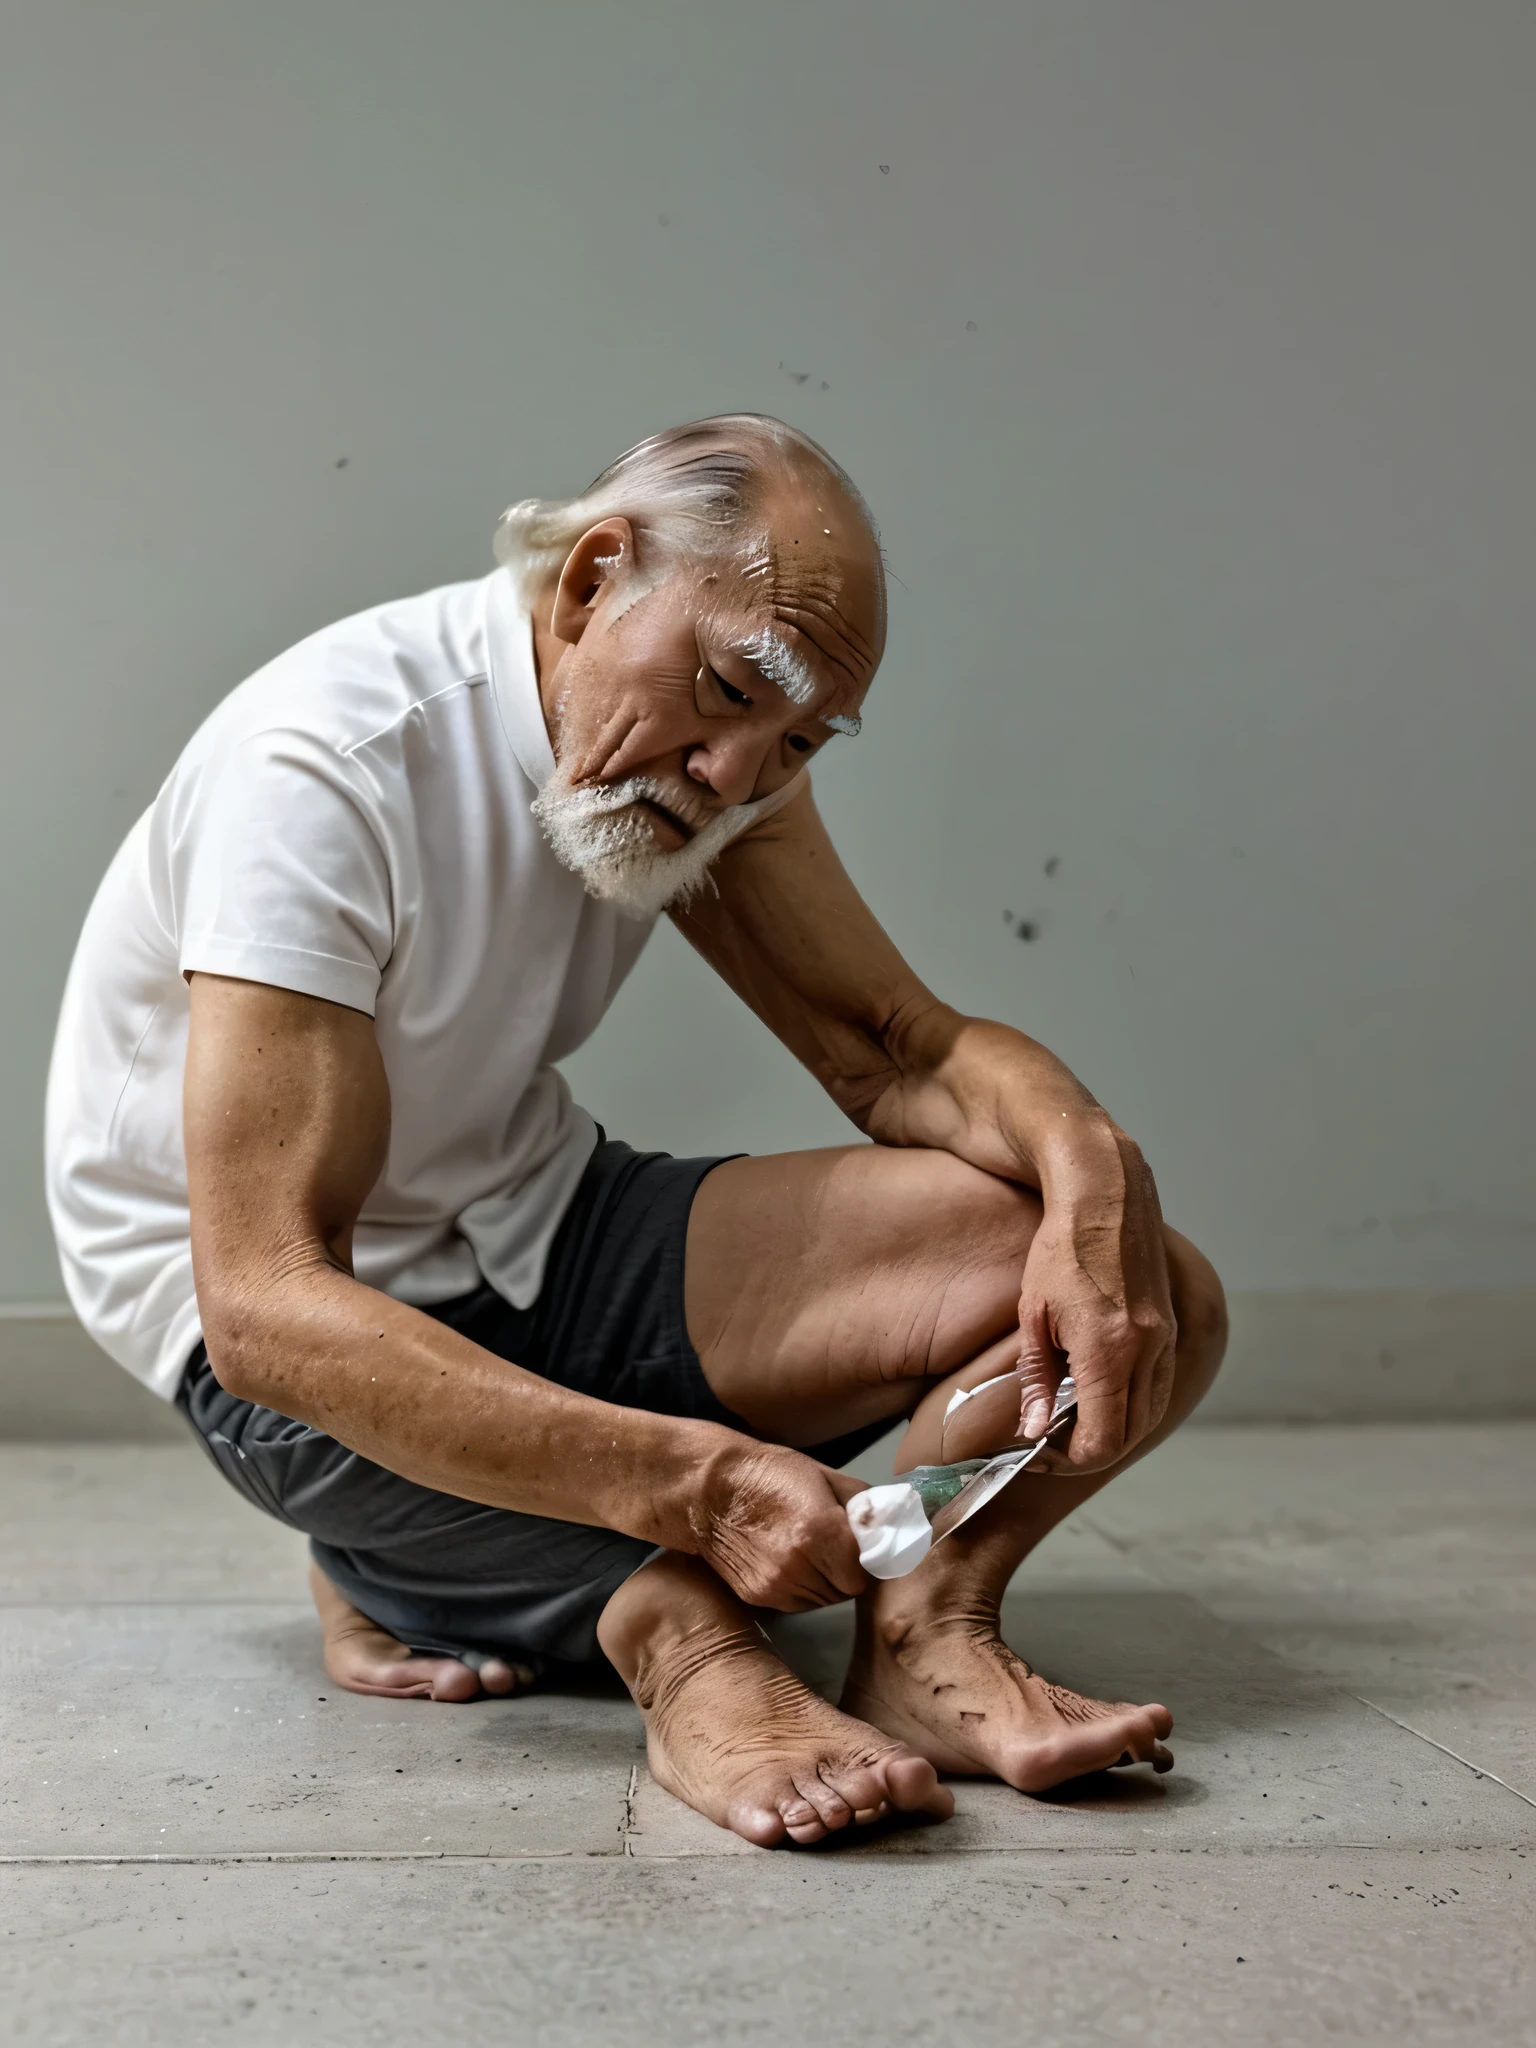 Um velho procurando uma lente de contato que caiu no chão、De lado, abra as pernas